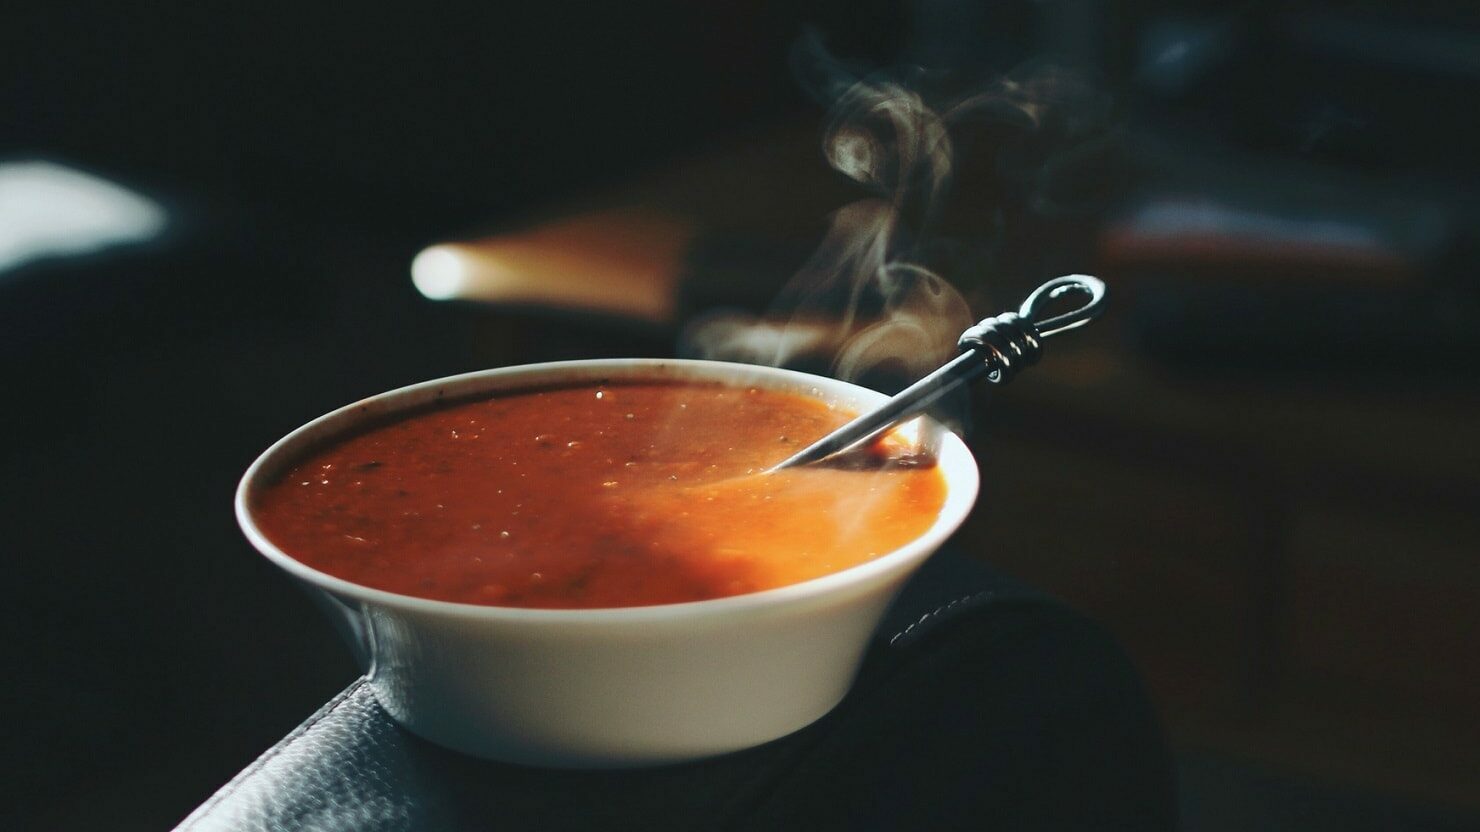 Ein Teller mit dampfender, pinkanter Tomatensuppe steht auf der Lehne eines Stuhls in einem dunklen Büro. In der Suppe liegt ein Löffel.